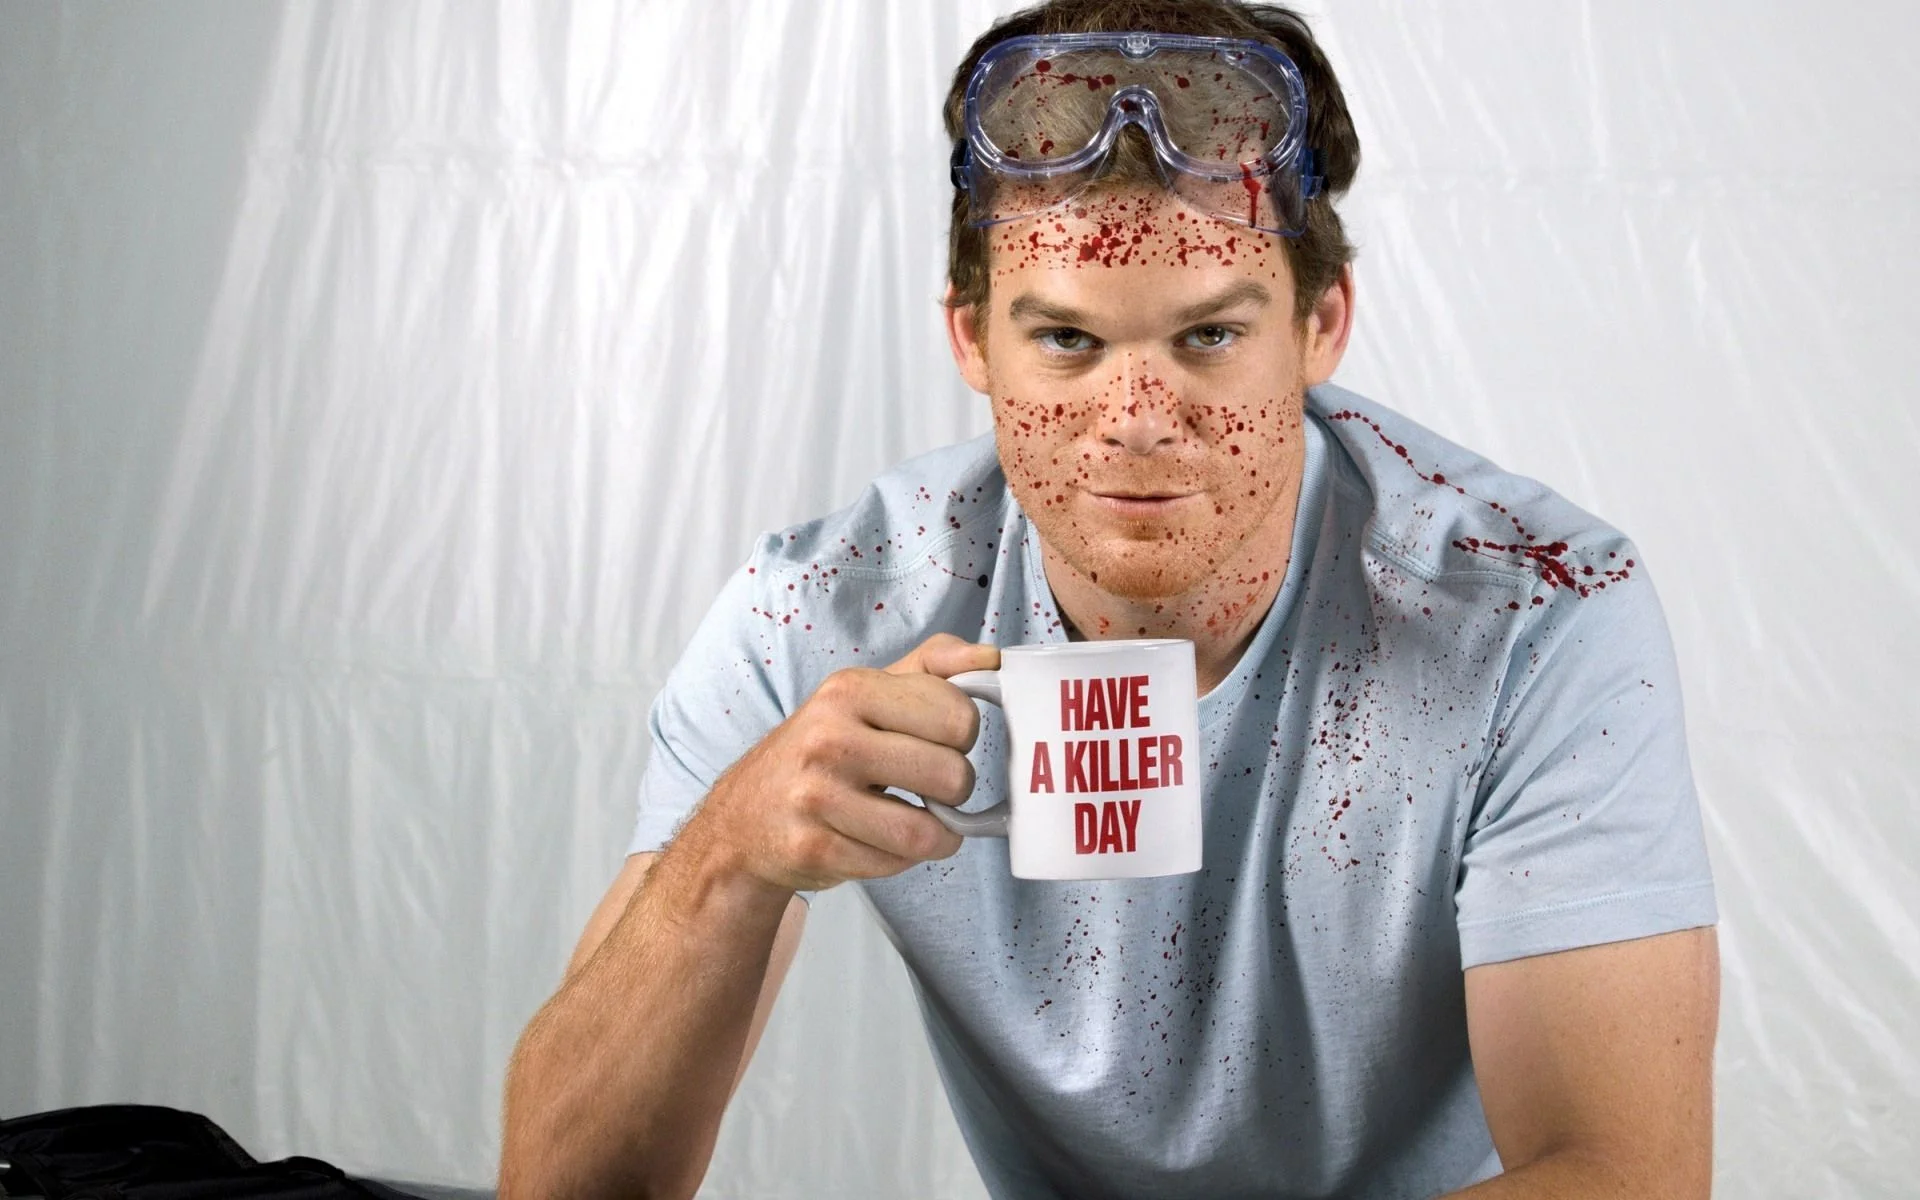 96 épisodes de Dexter résumés en une minute